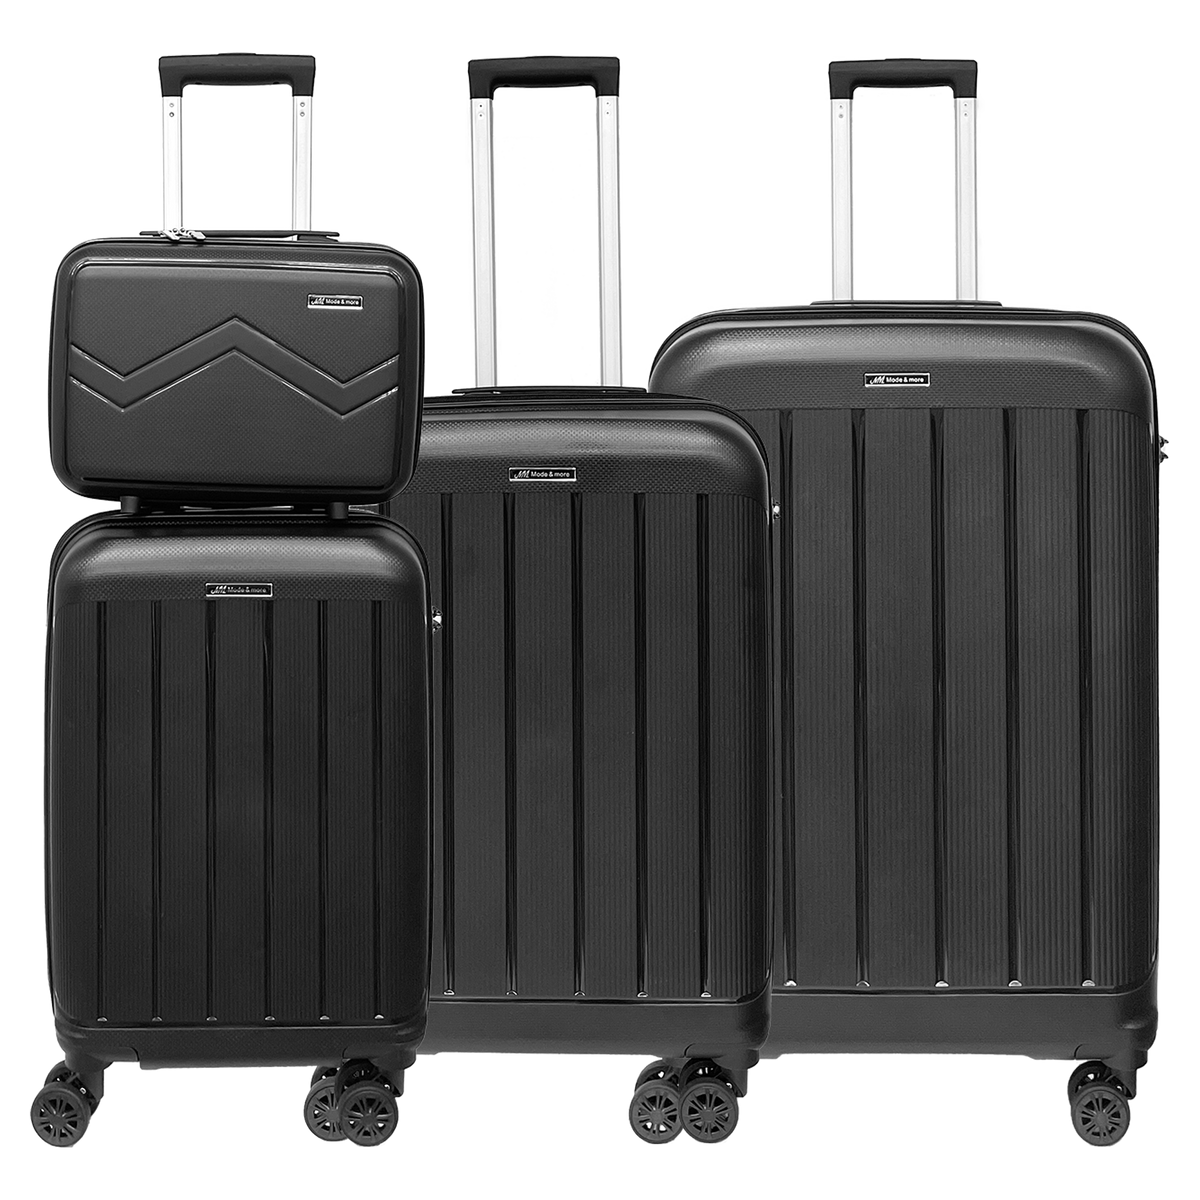 Ensemble de 4 valises en polypropylène souple léger avec serrure TSA - Bagages de haute qualité extrêmement légers, avec trousse de beauté